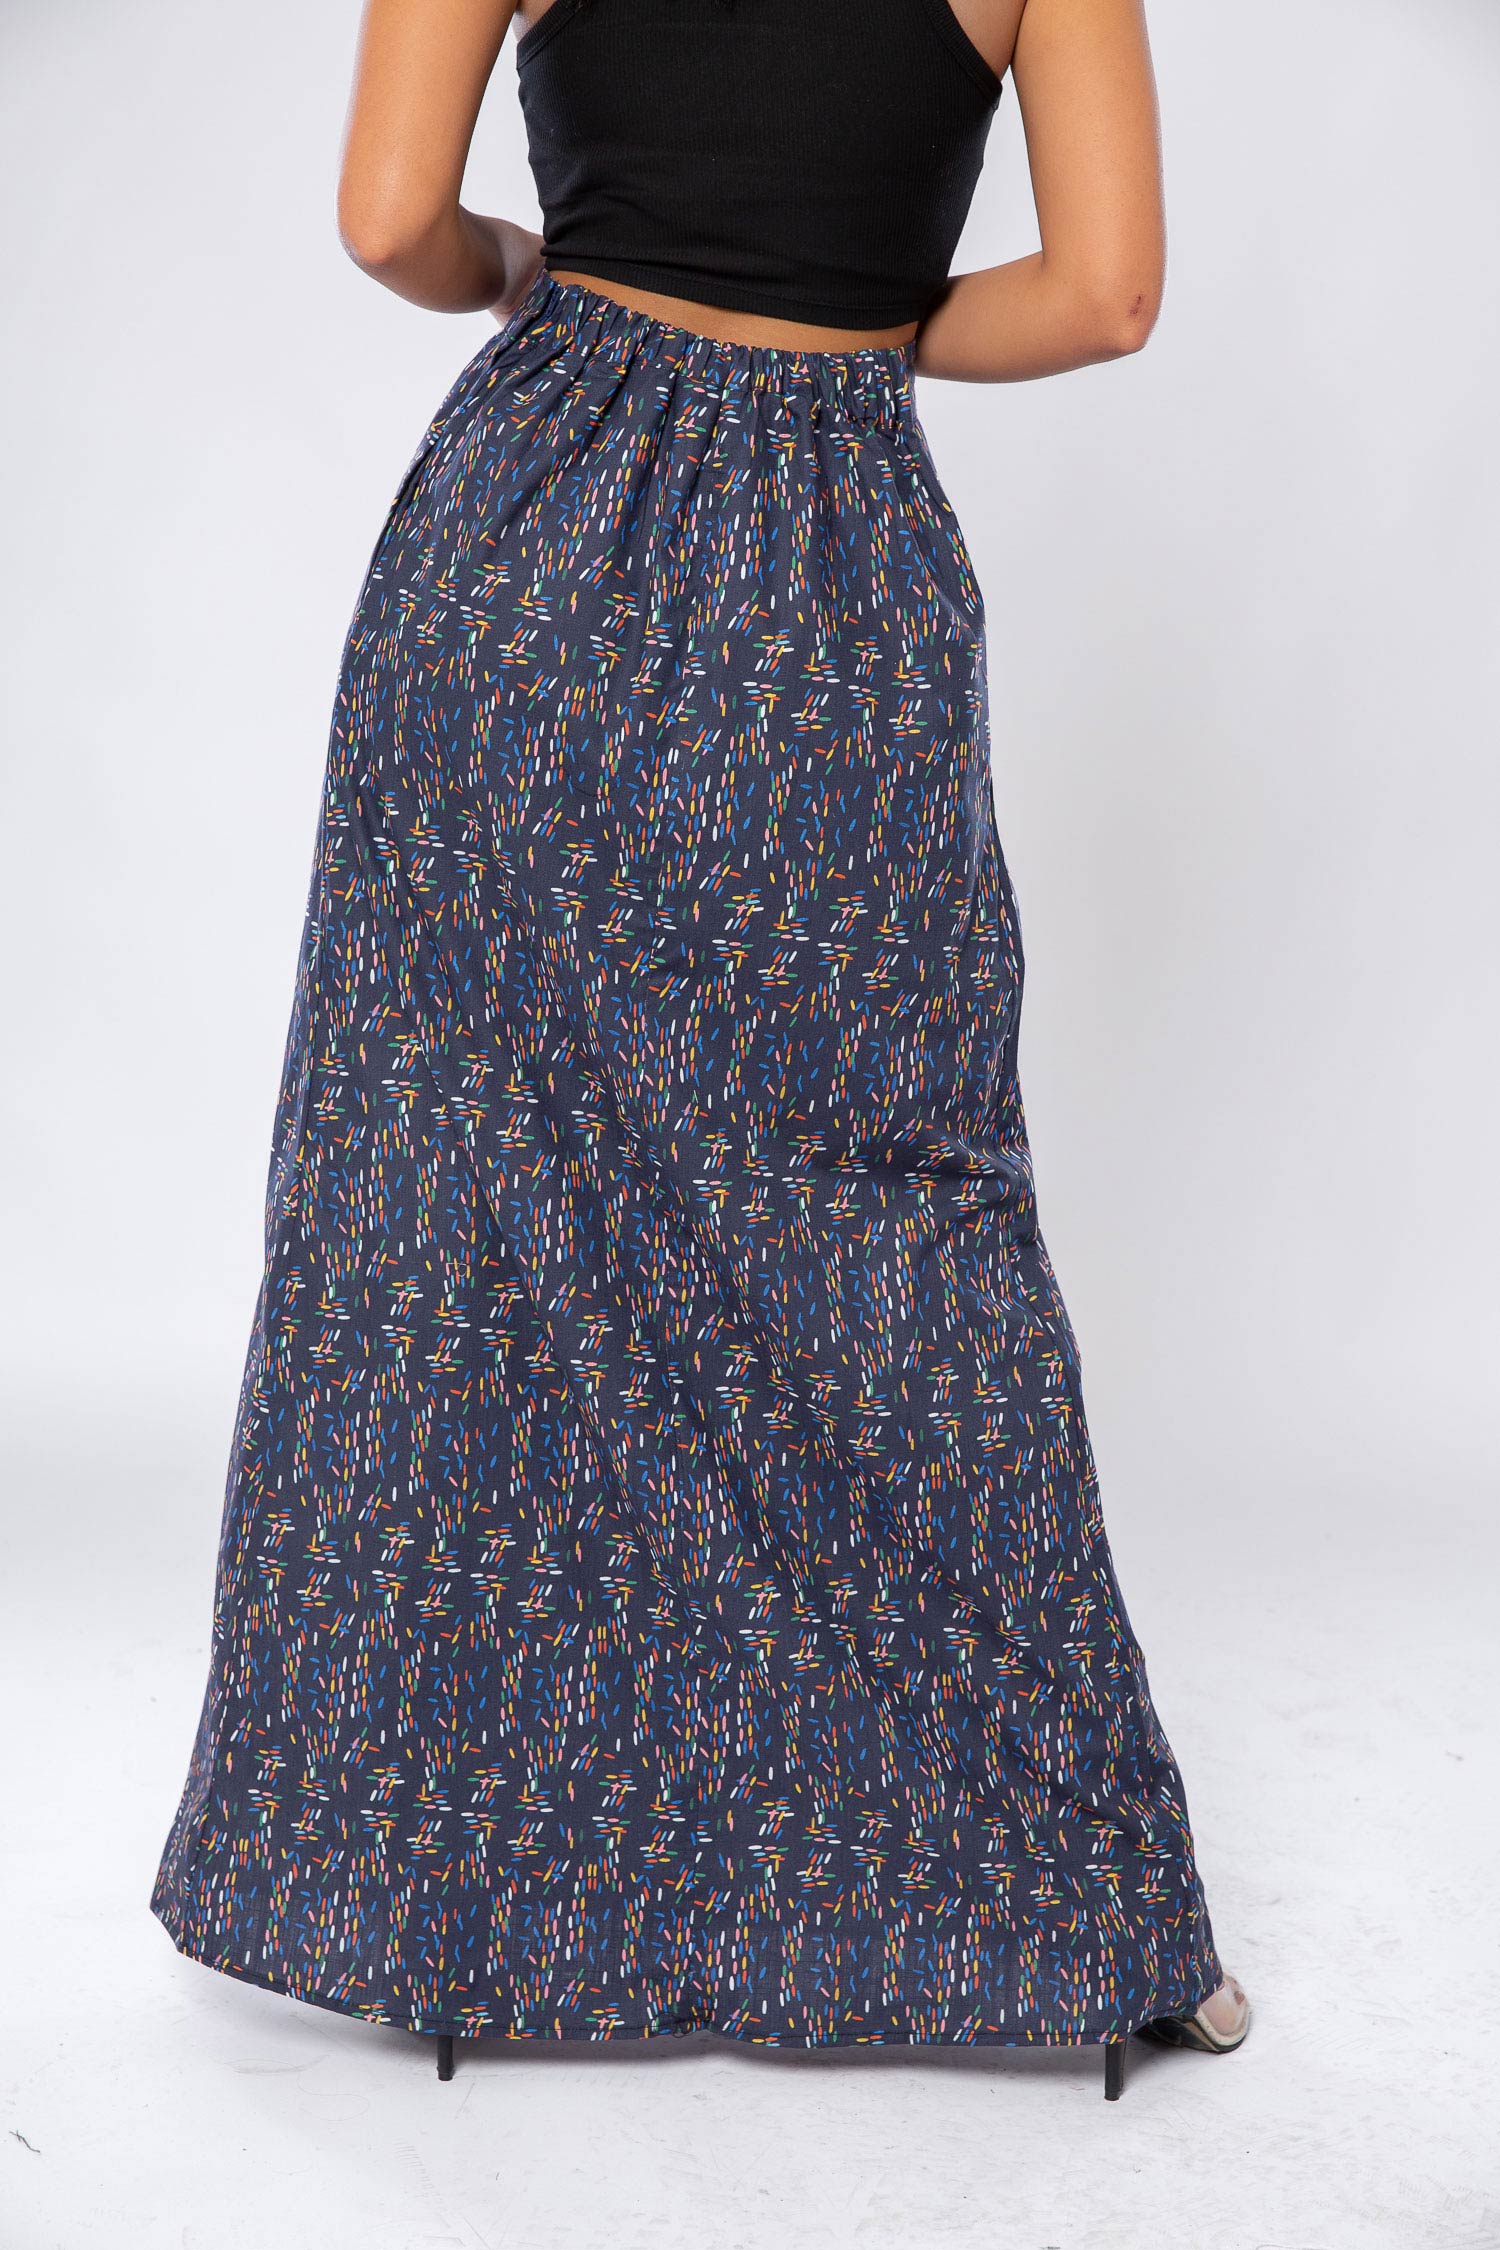 cotton printed skirt